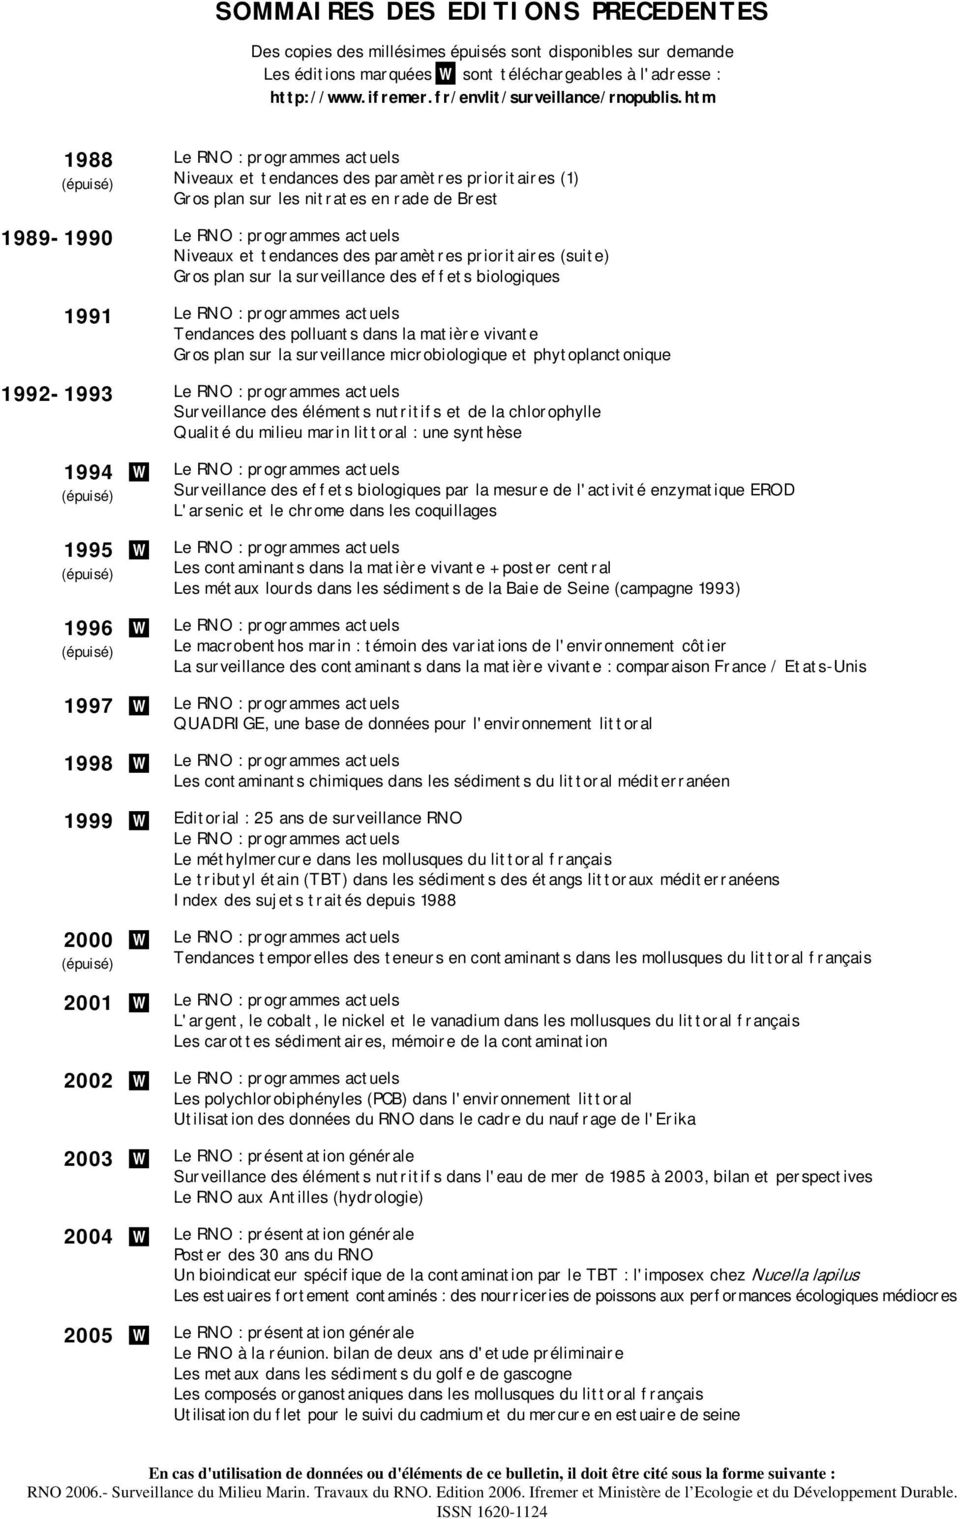 htm 1988 (épuisé) Le RNO : programmes actuels Niveaux et tendances des paramètres prioritaires (1) Gros plan sur les nitrates en rade de Brest 1989-1990 Le RNO : programmes actuels Niveaux et